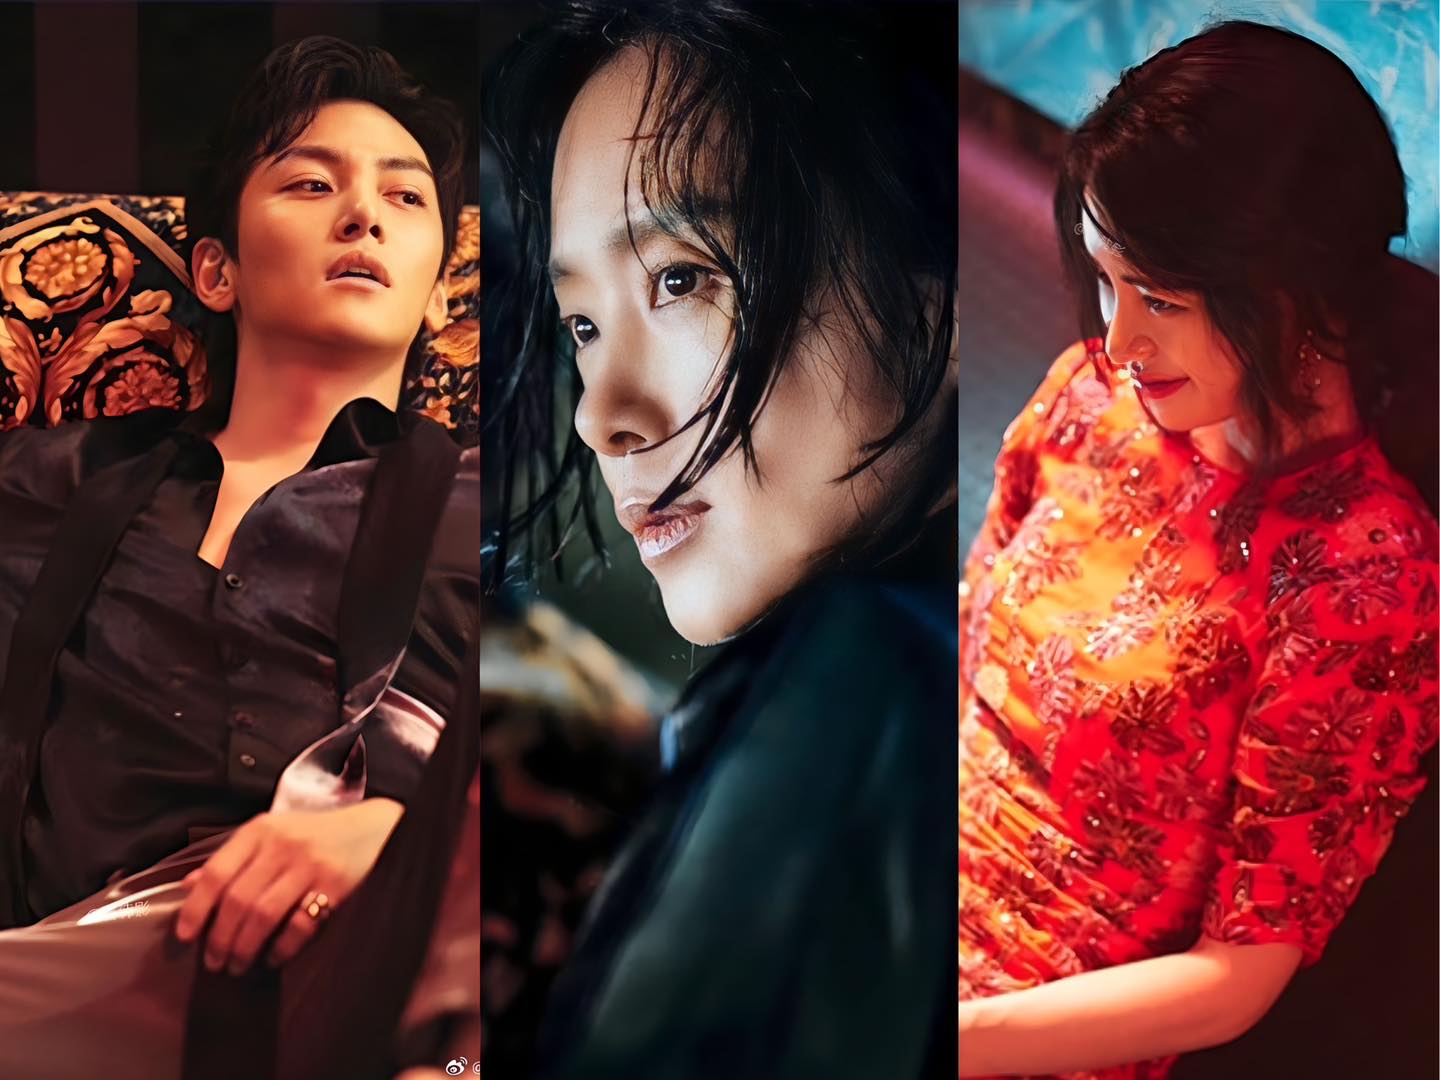 Khán giả mong chờ màn kết hợp của 3 gương mặt cực kỳ nổi tiếng: Ji Chang Wook, Lim Ji Yeon và Jeon Do Yeon.